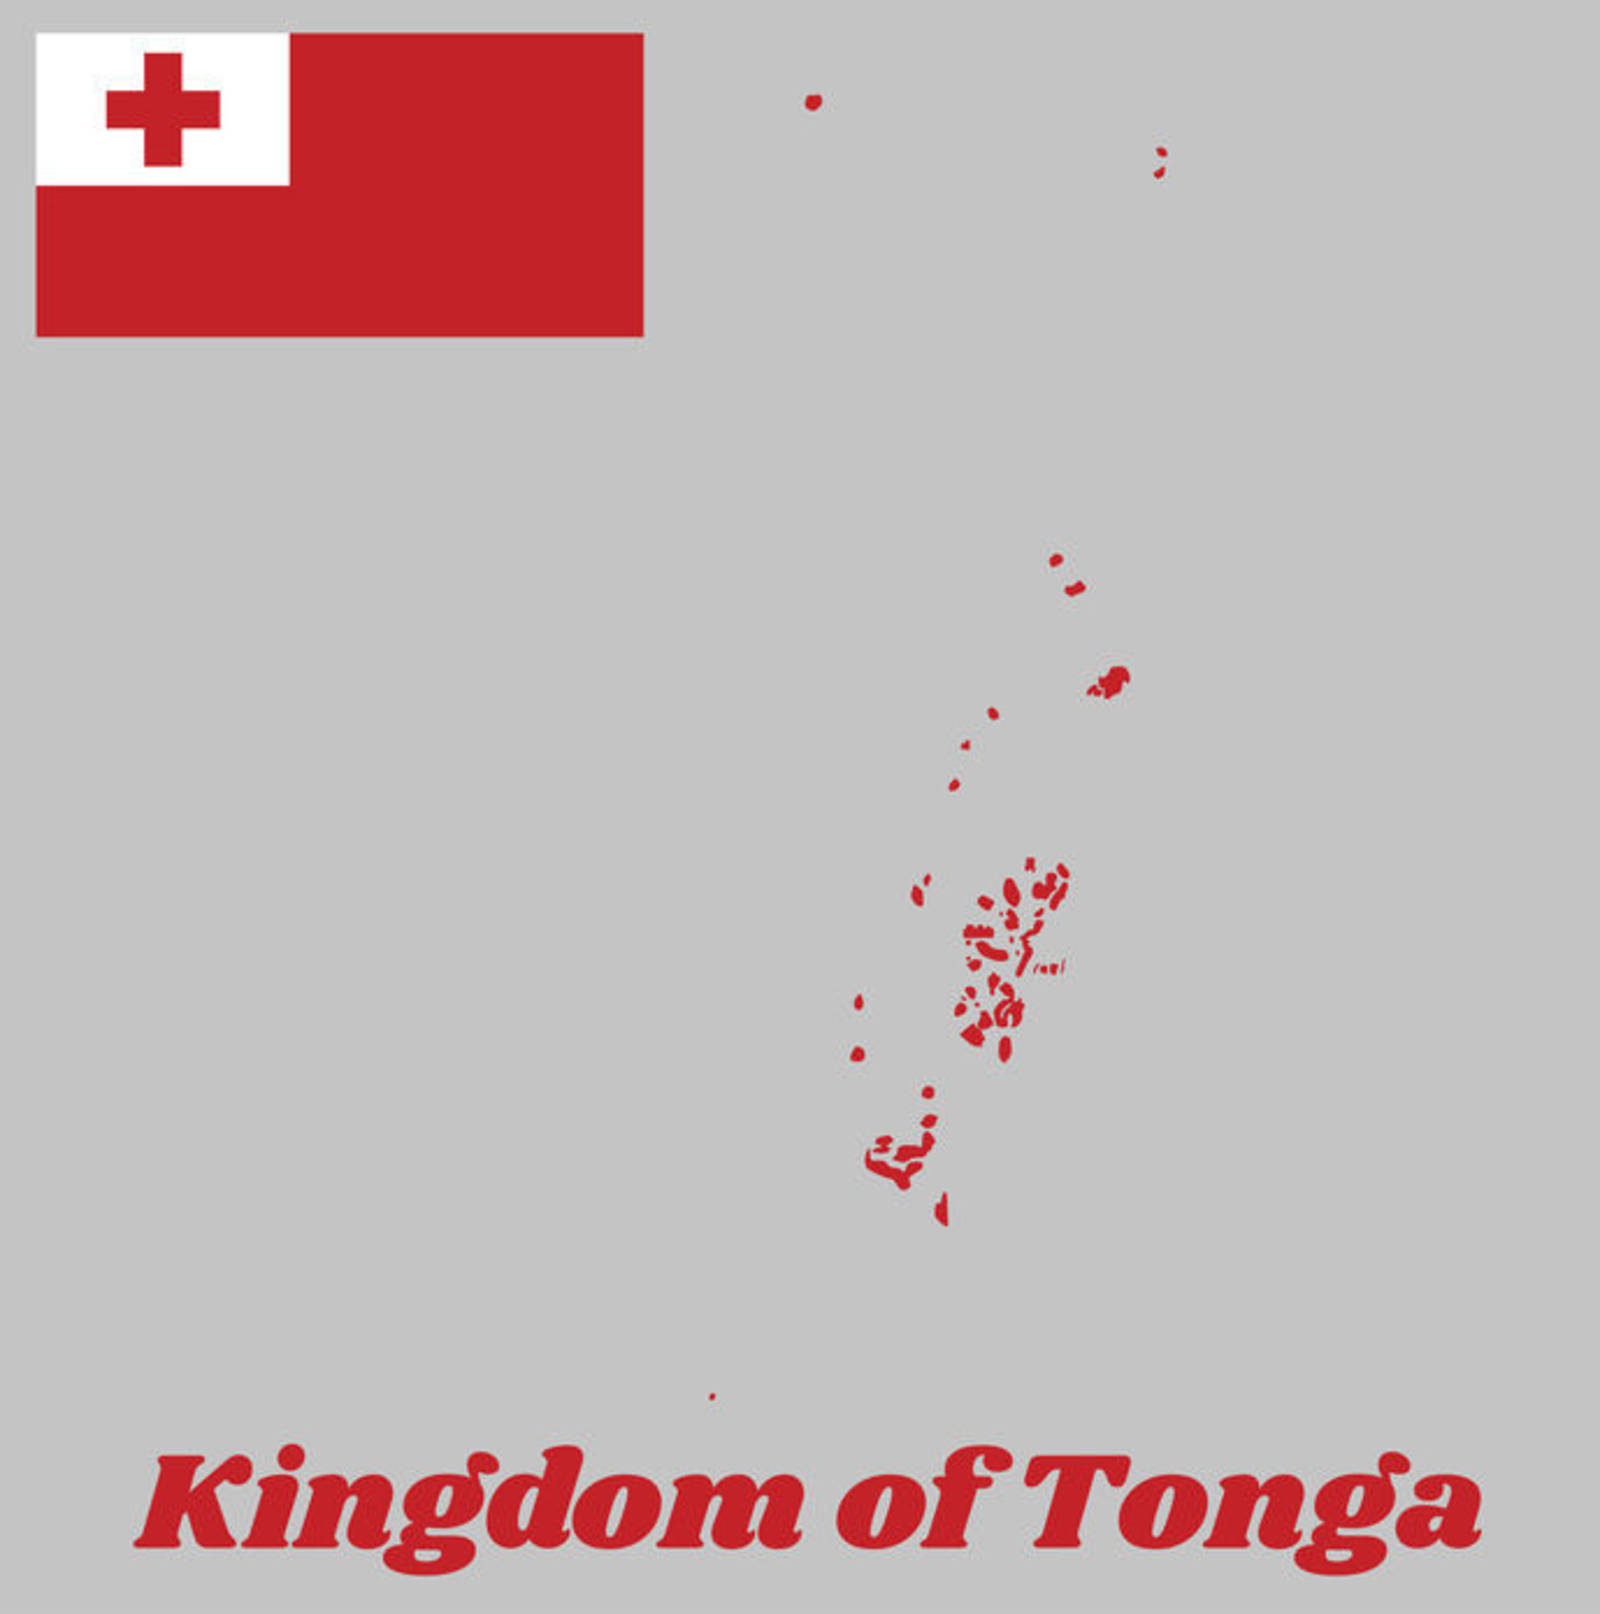 東加王國--「零污染」的島國